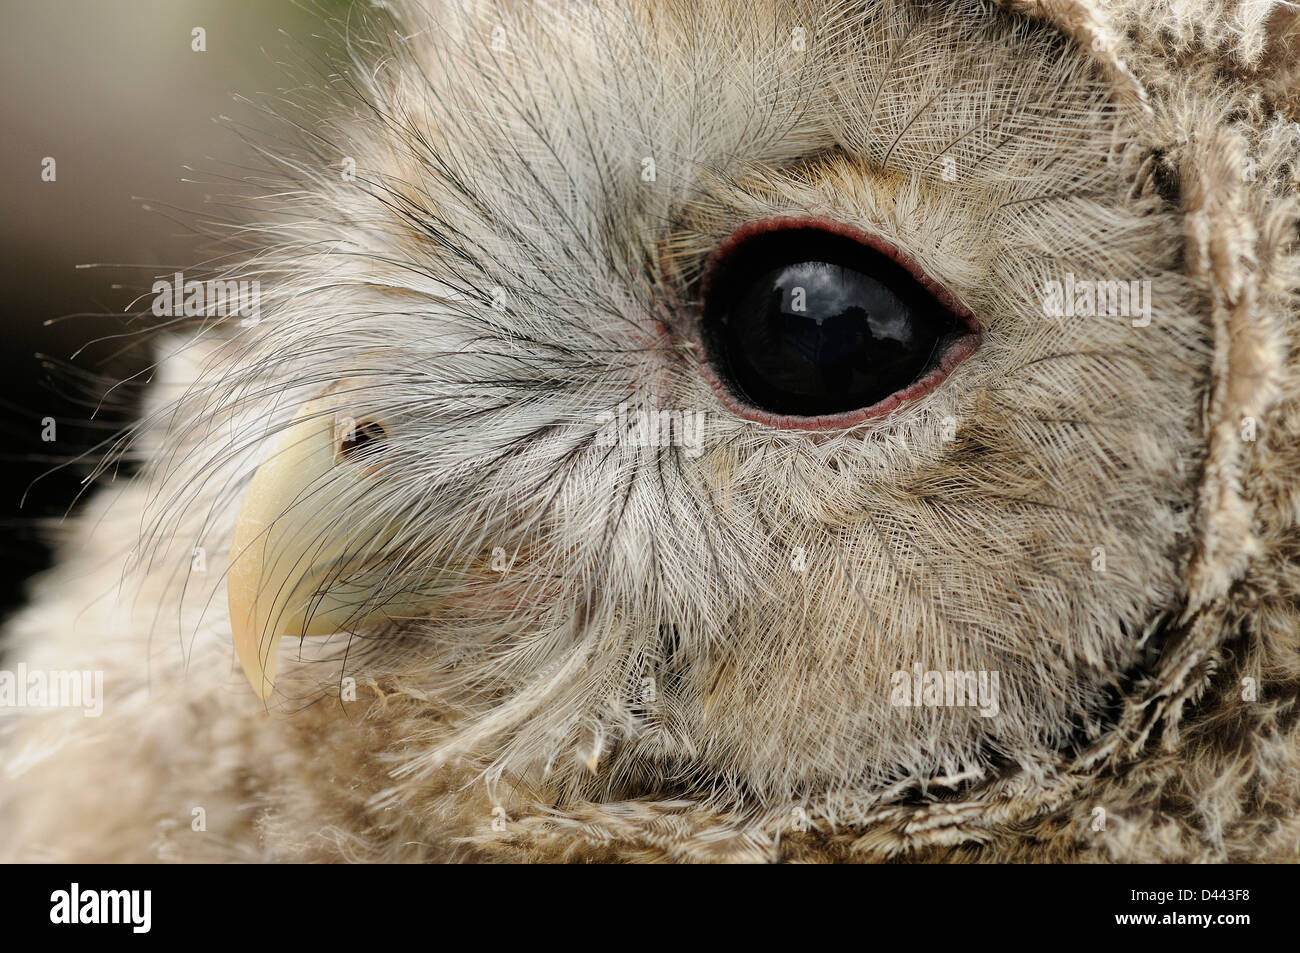 Ural Owl (Strix uralenisis) close-up of eye and beak of chick, captive Stock Photo